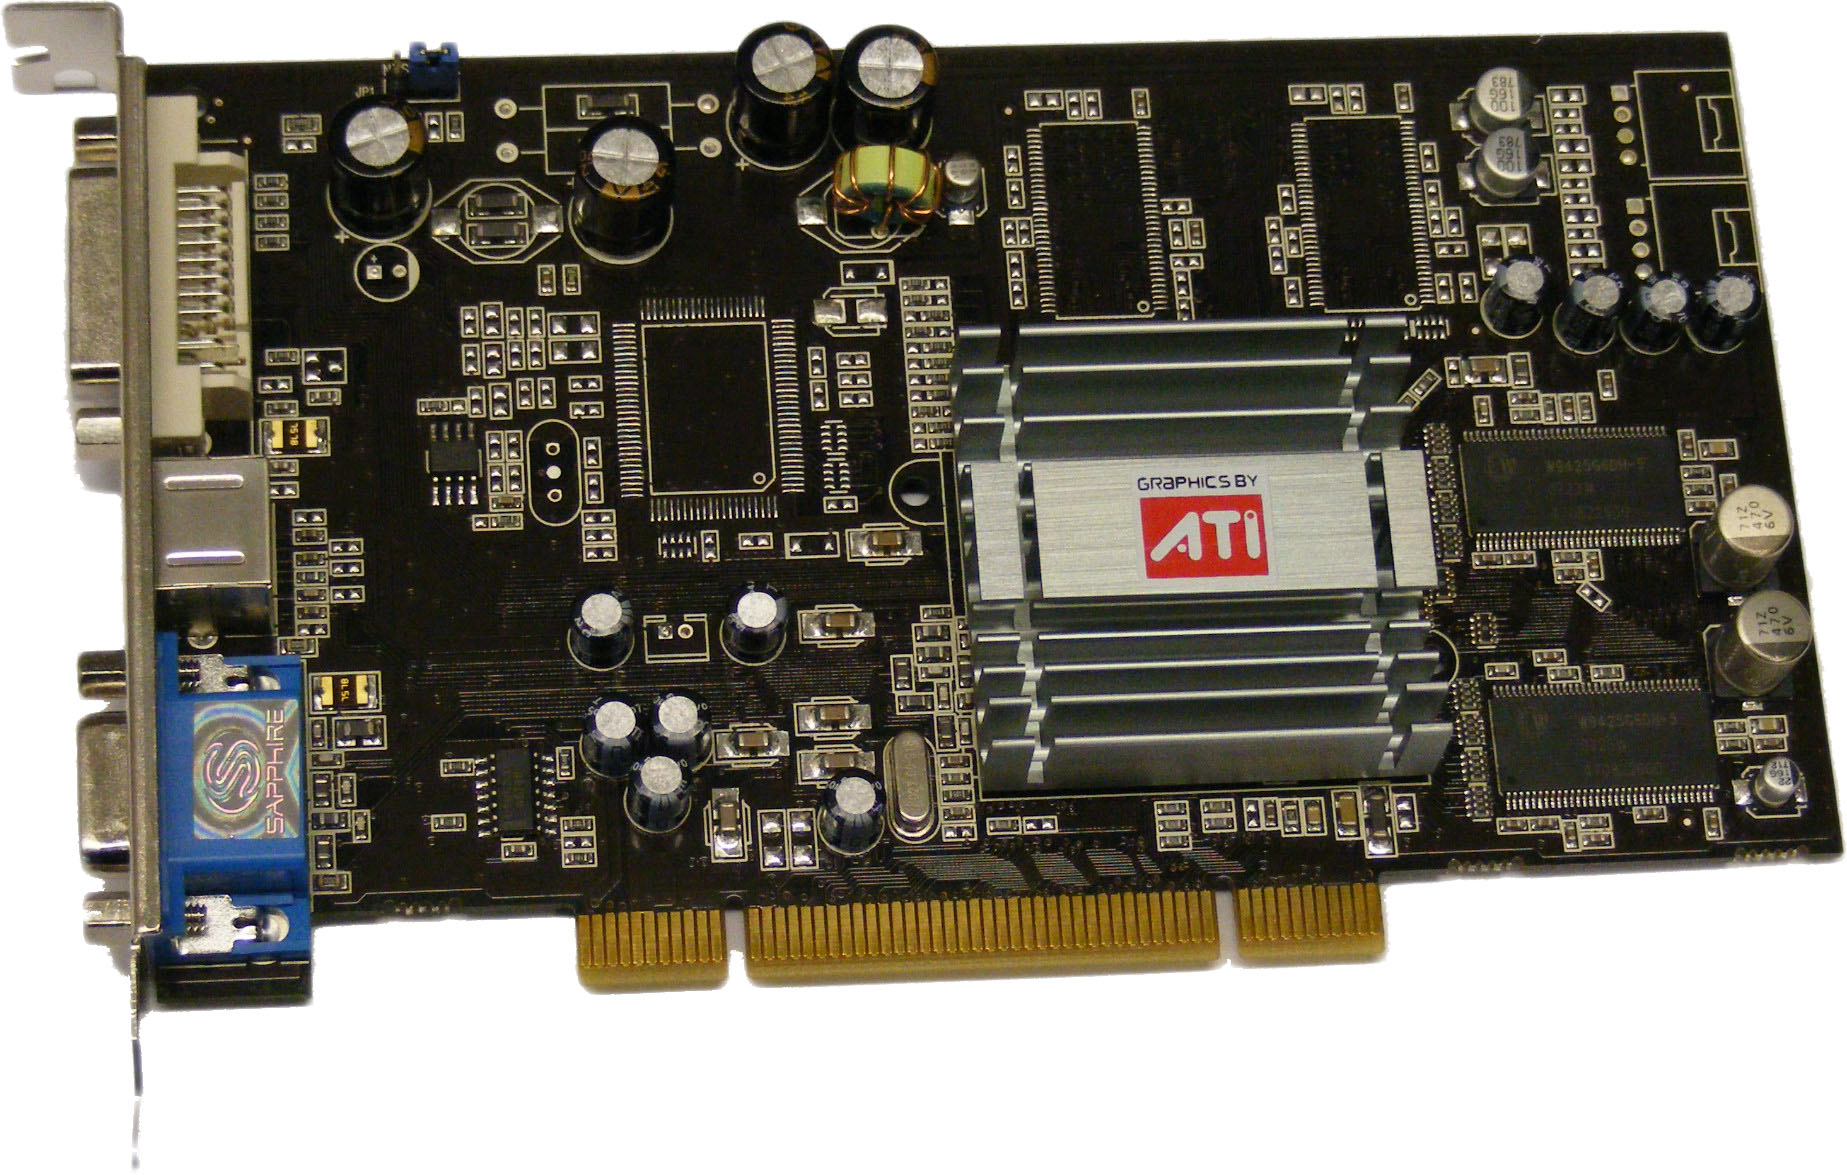 ATI Radeon 9250 graphic card